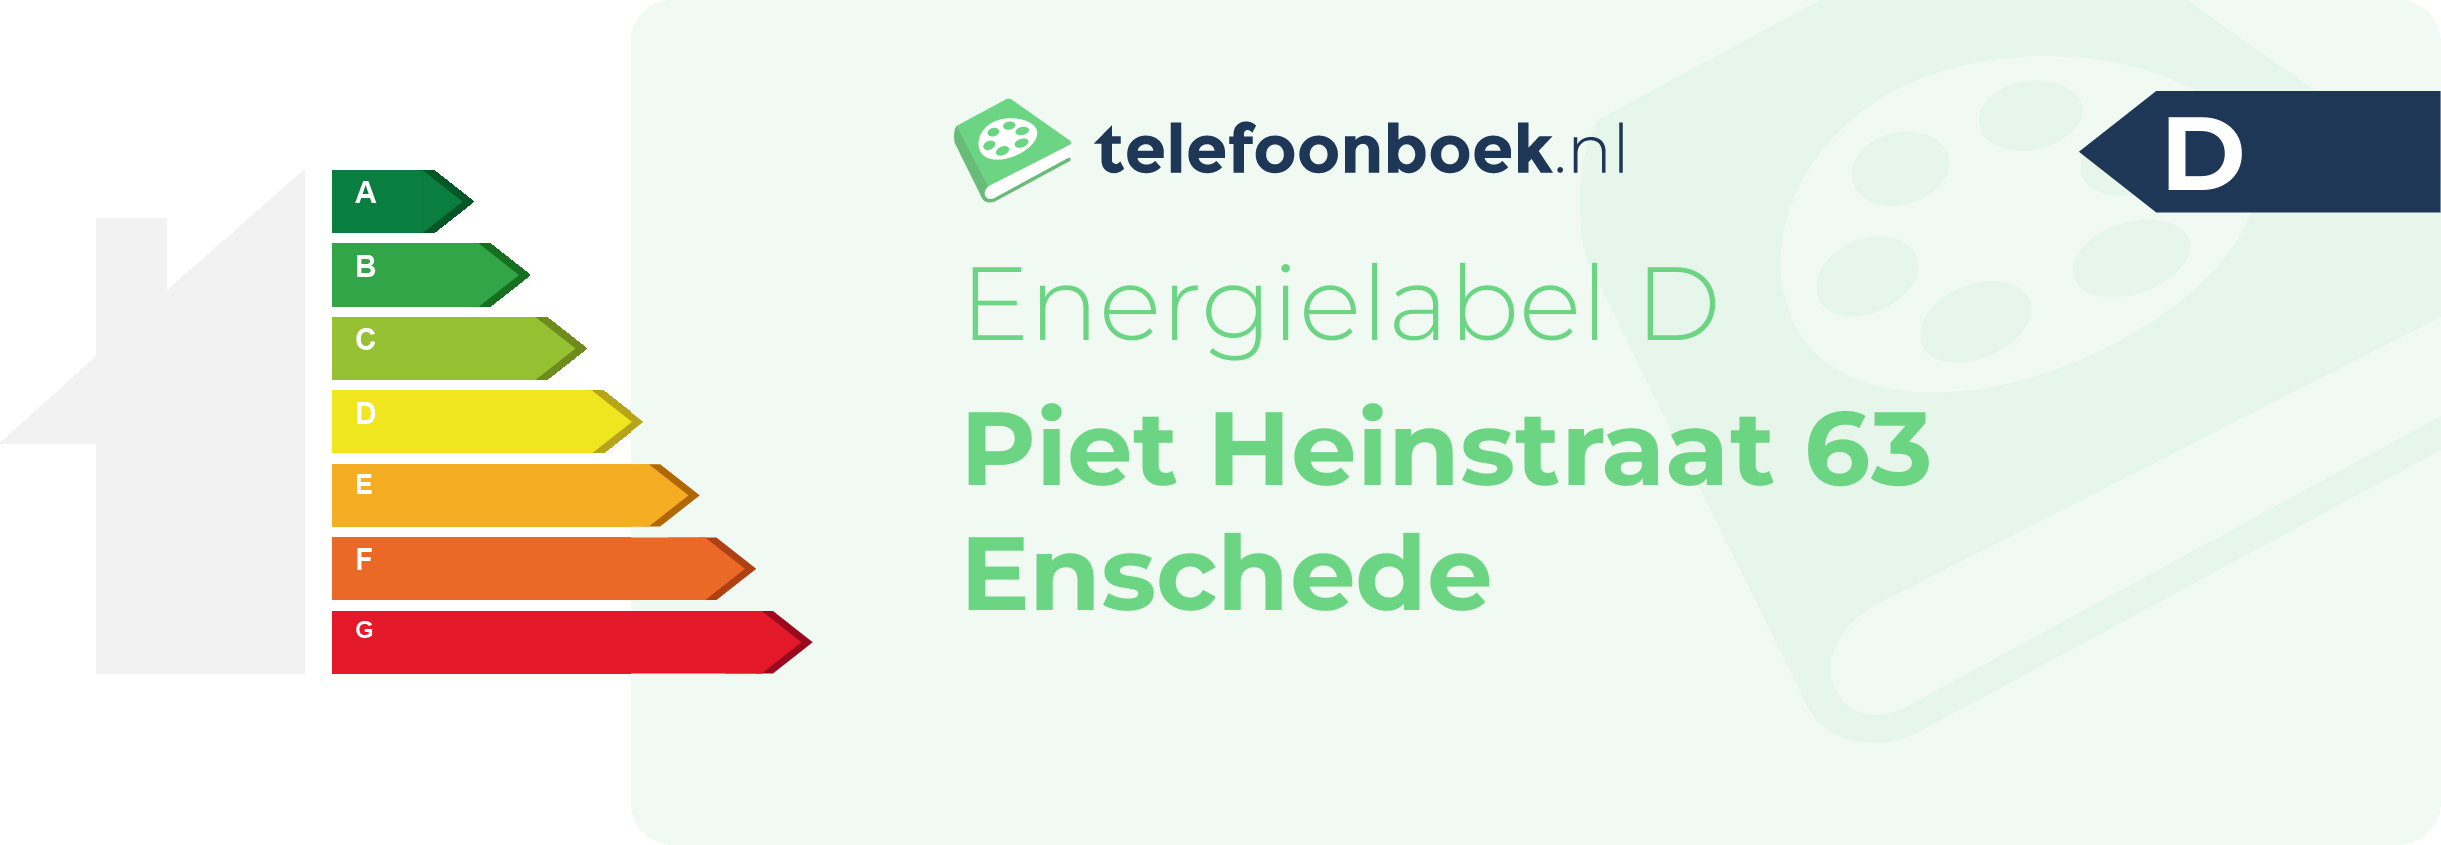 Energielabel Piet Heinstraat 63 Enschede